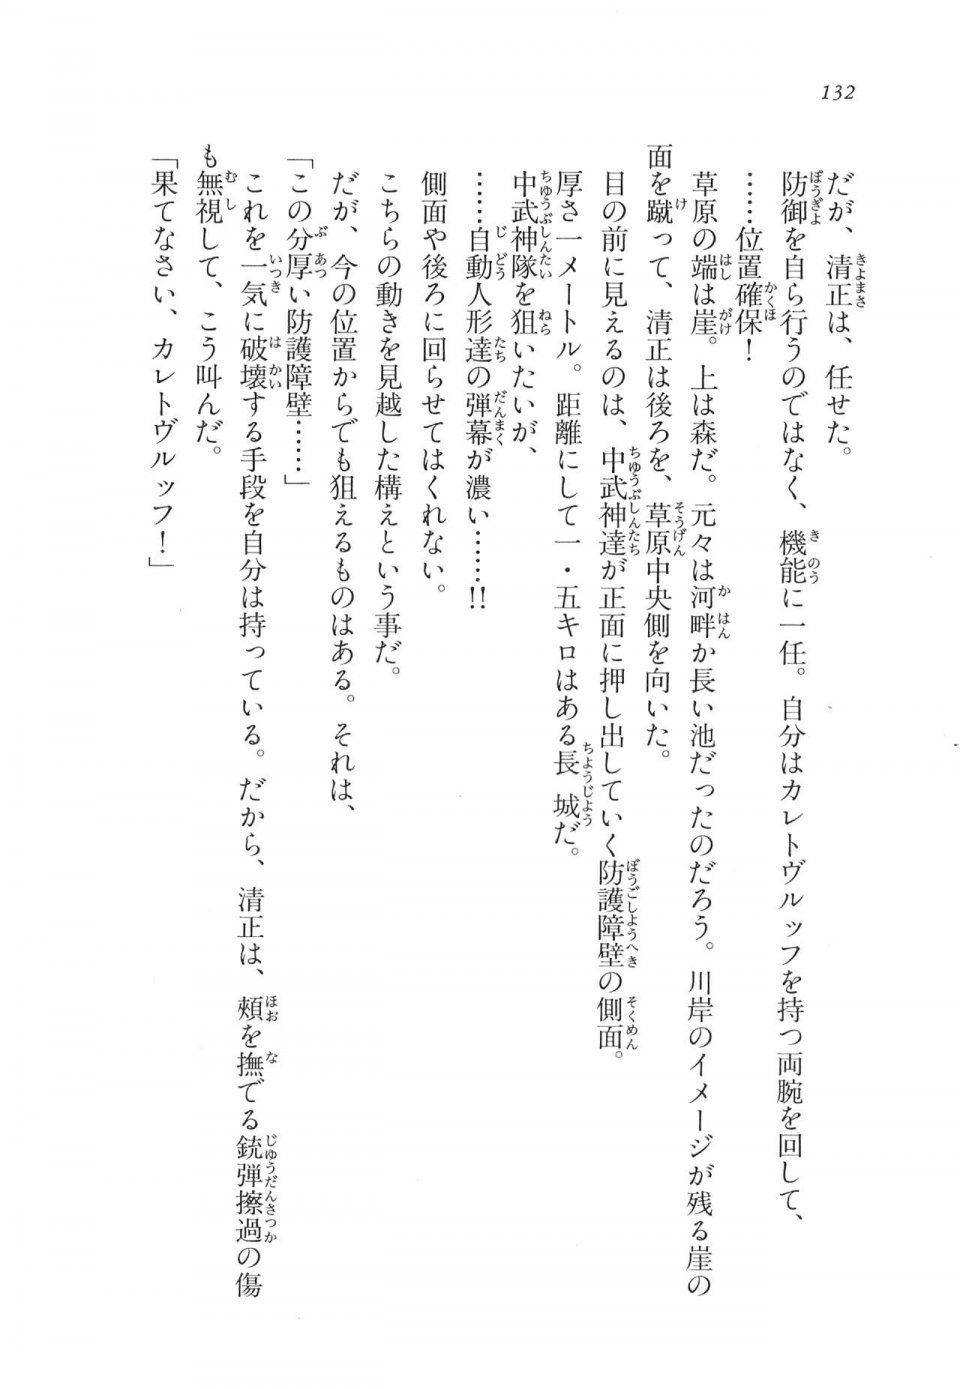 Kyoukai Senjou no Horizon LN Vol 11(5A) - Photo #132